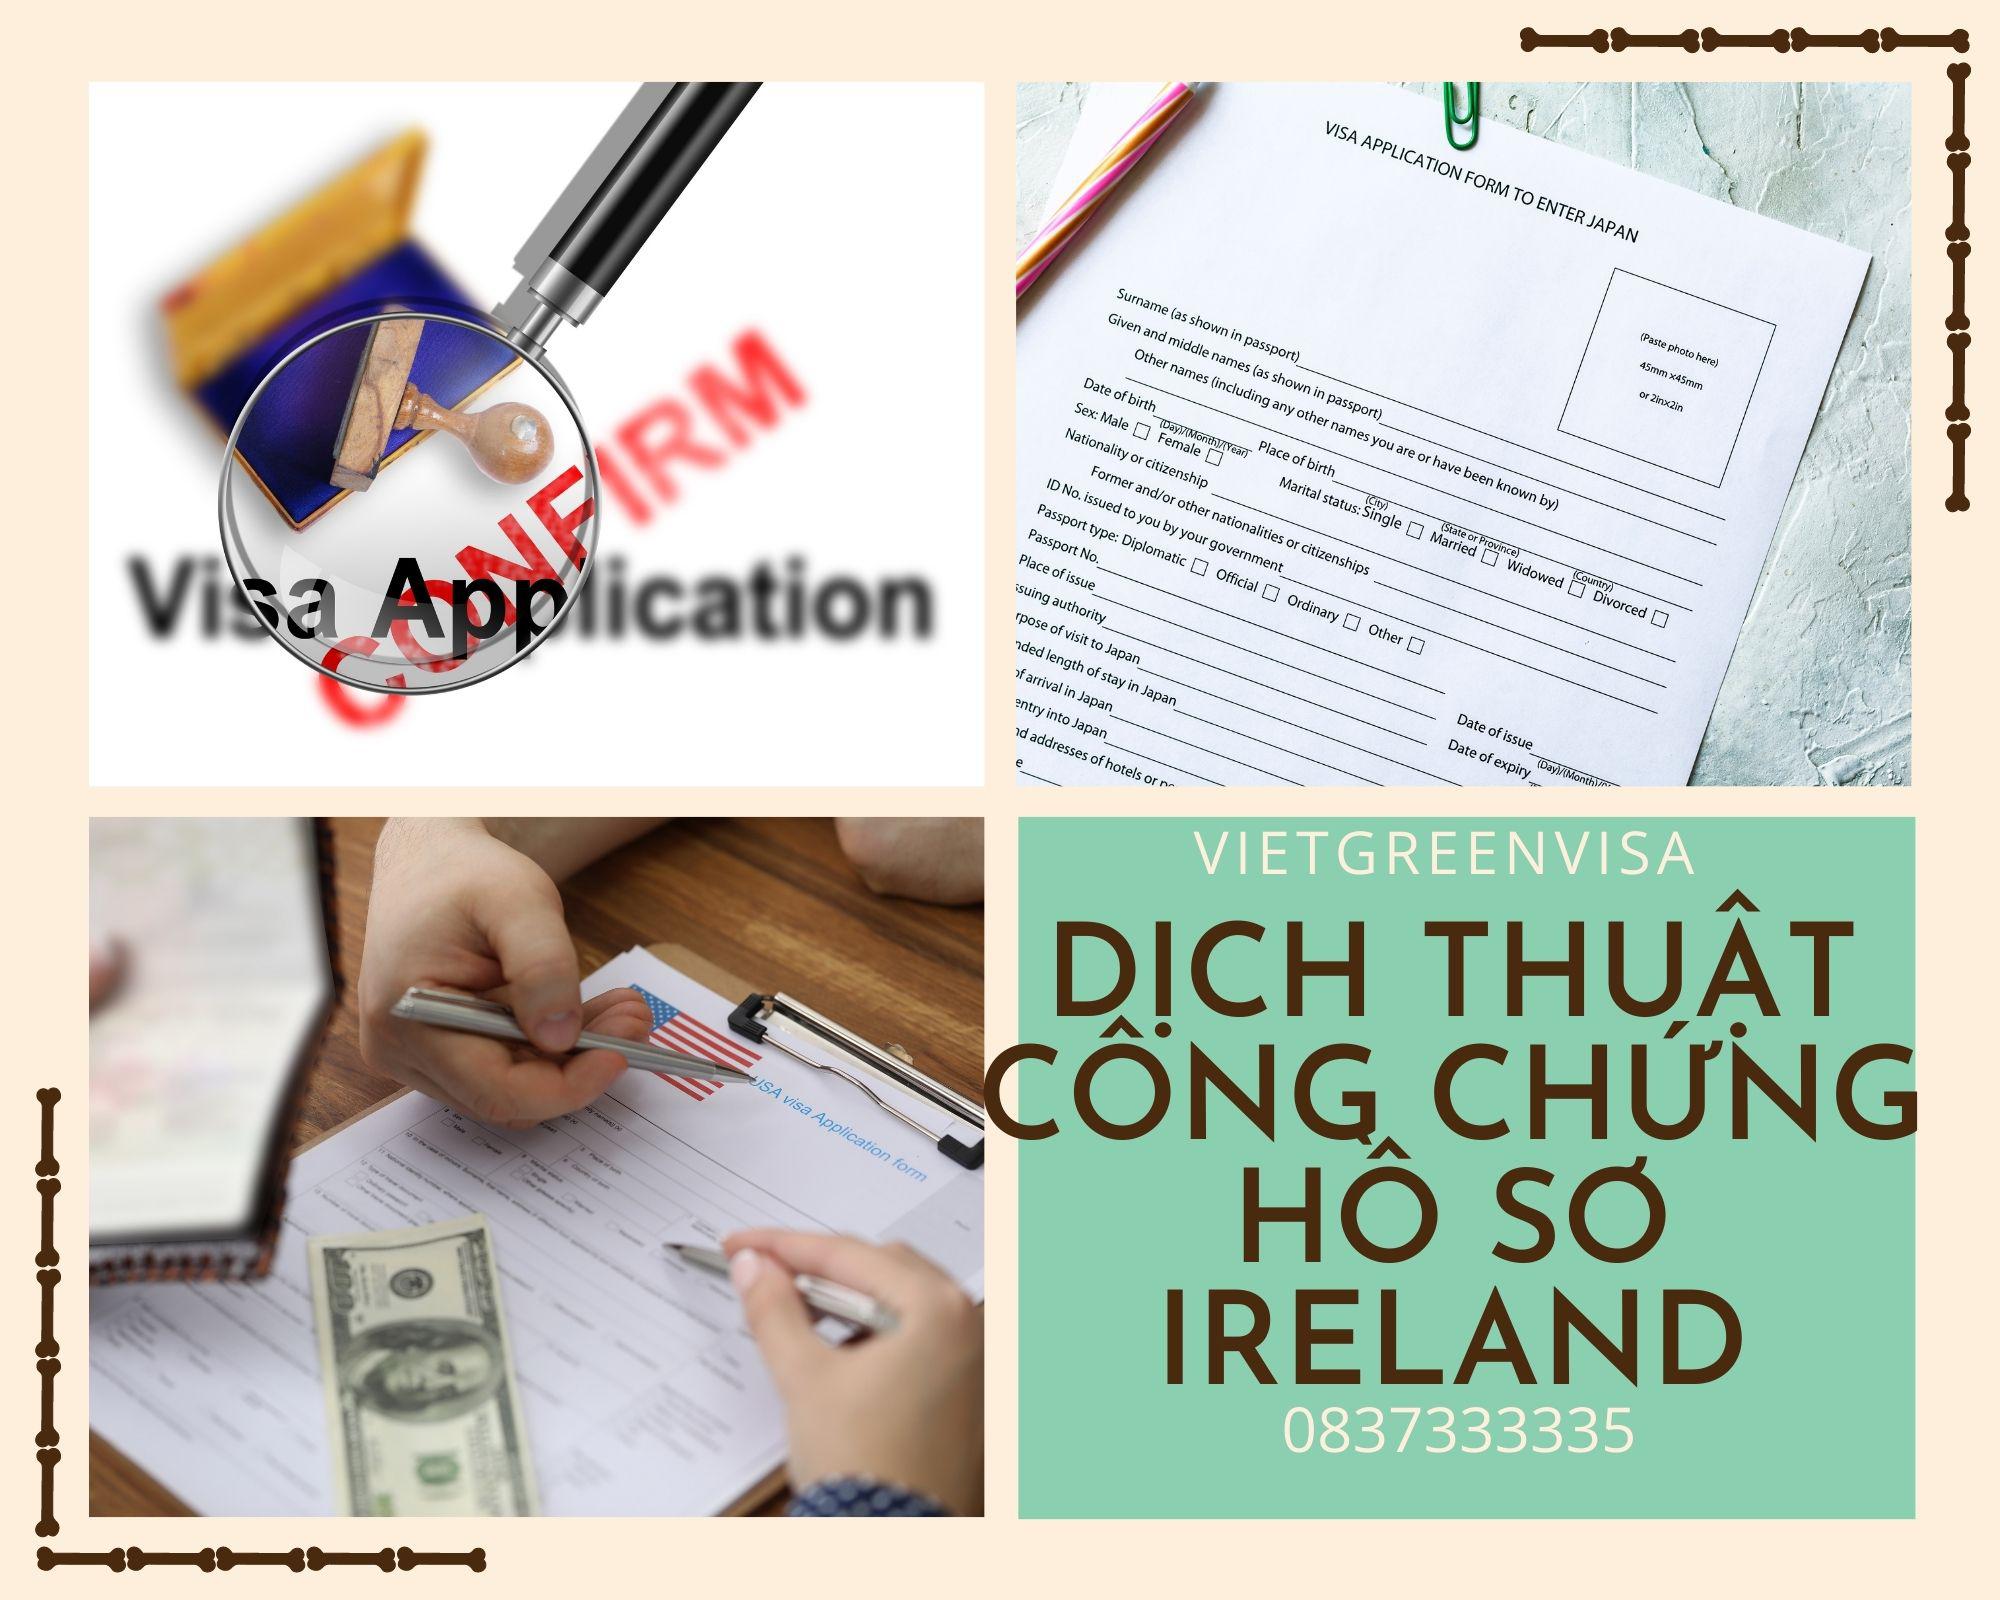 Dịch vụ dịch thuật công chứng hồ sơ visa Ireland